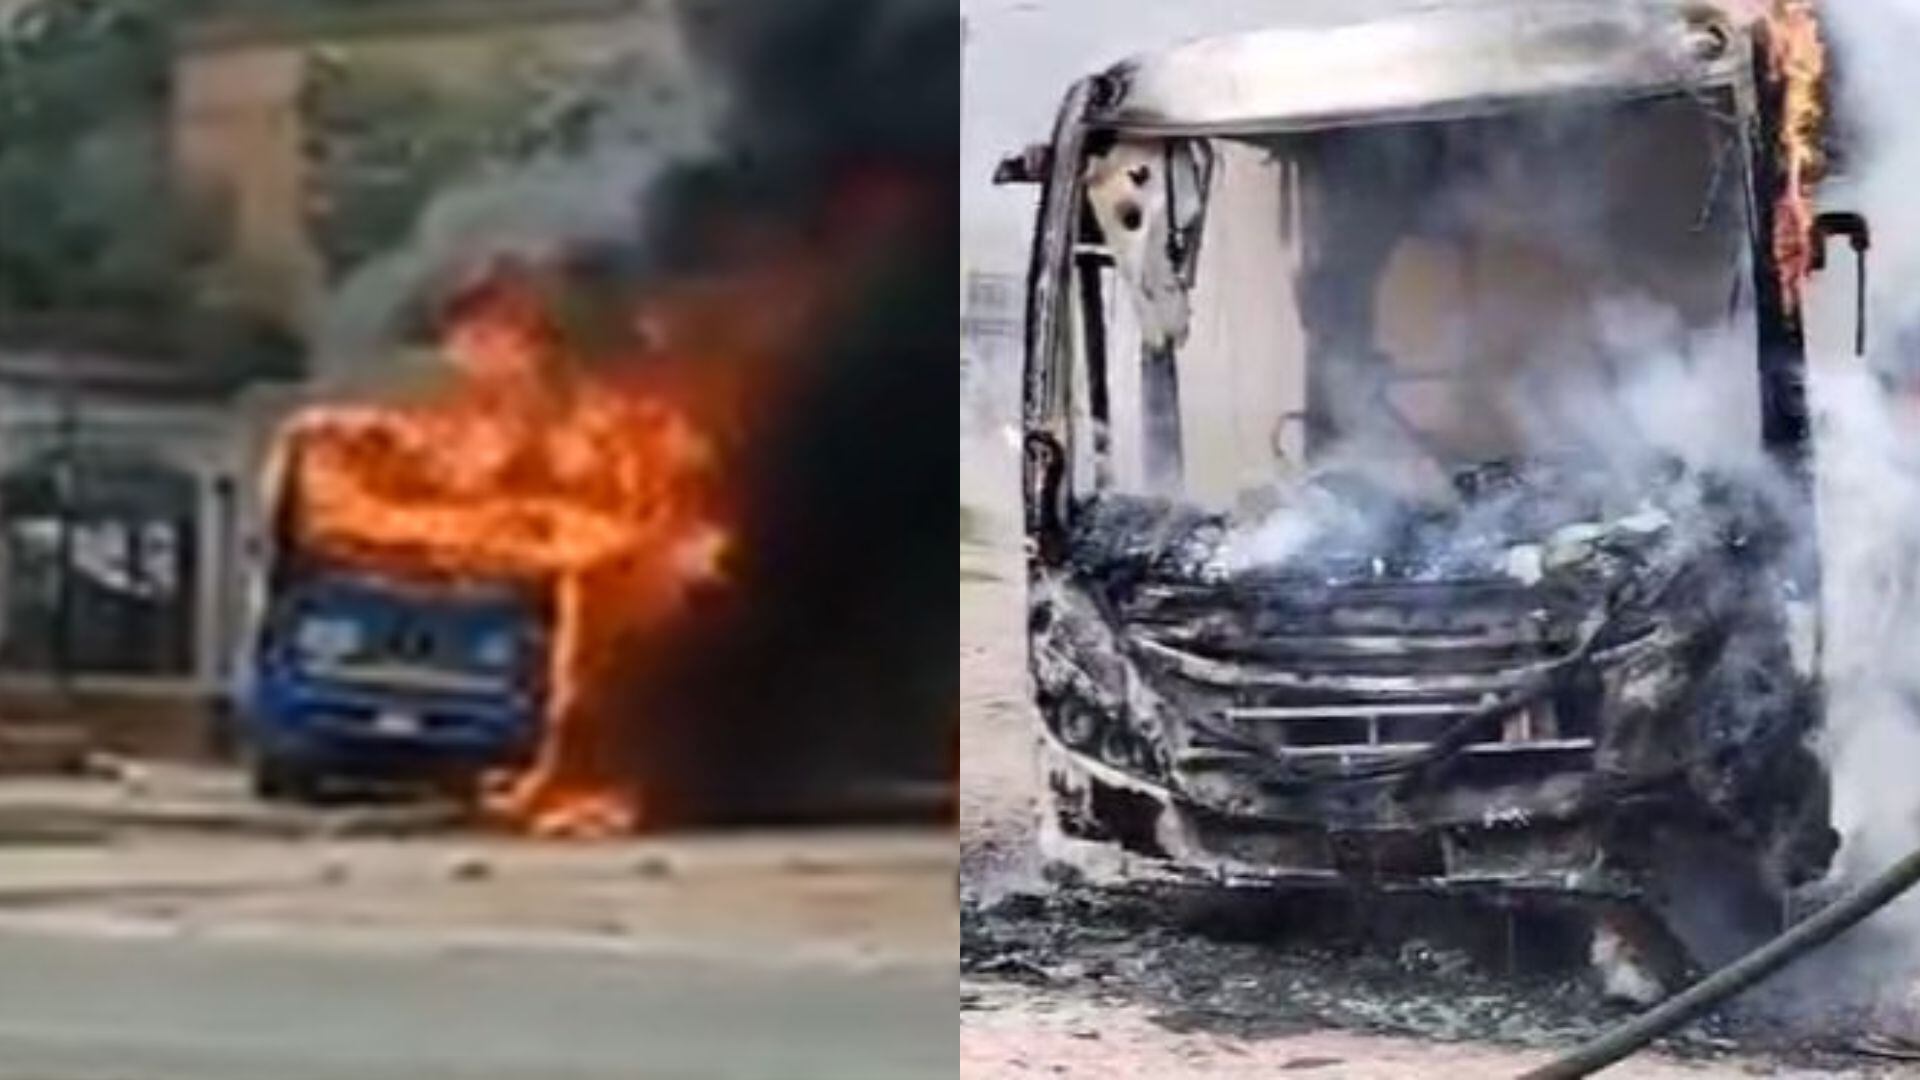 Un grupo de manifestantes provocaron el incendio de un autobús del SITP, generando una rápida respuesta de TransMilenio y las autoridades - crédito redes sociales y Bomberos Bogotá